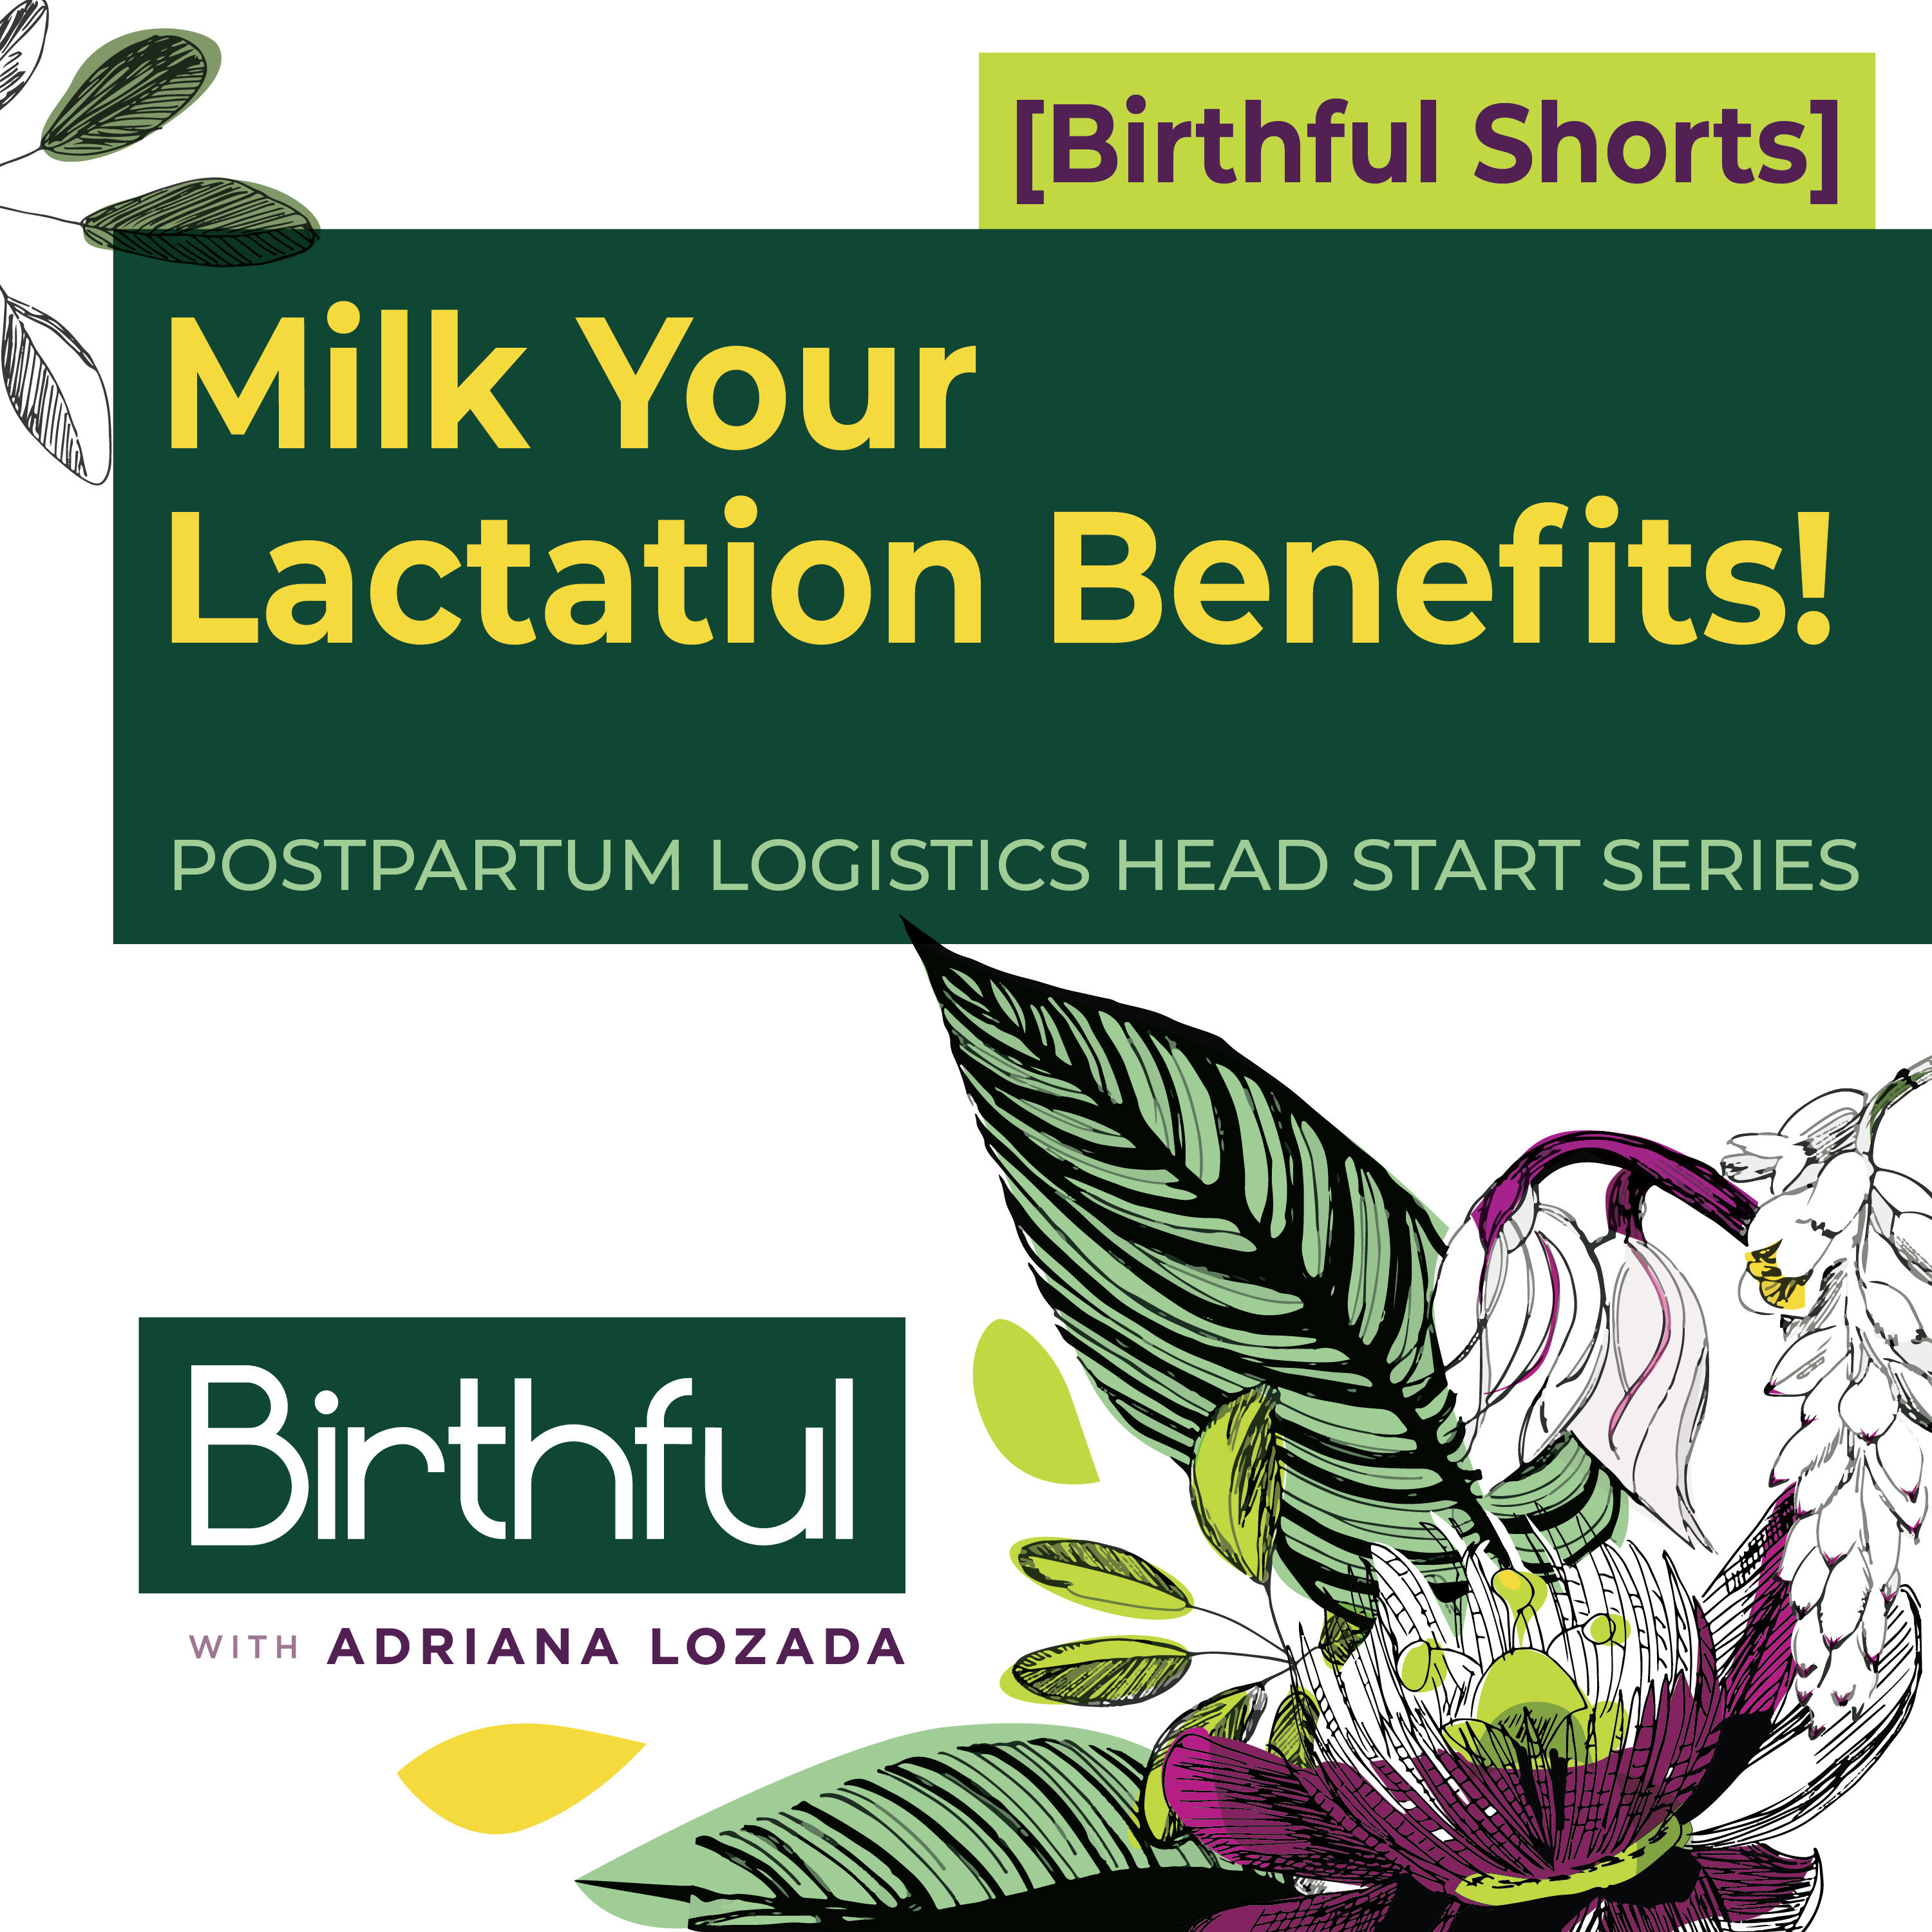 Milk Your Lactation Benefits!